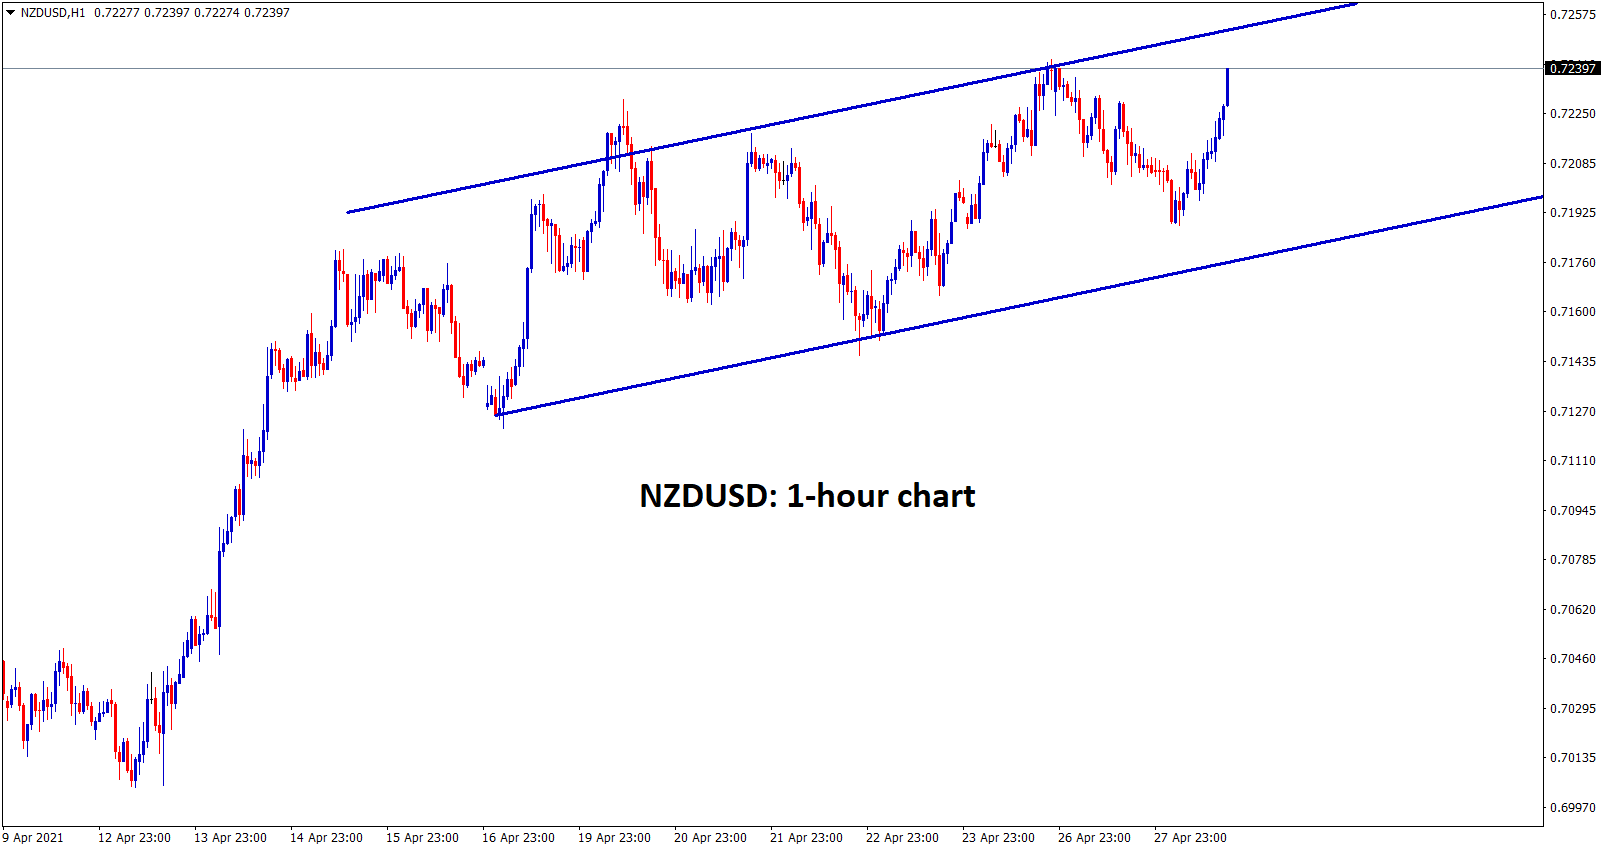 NZDUSD in uptrend movement